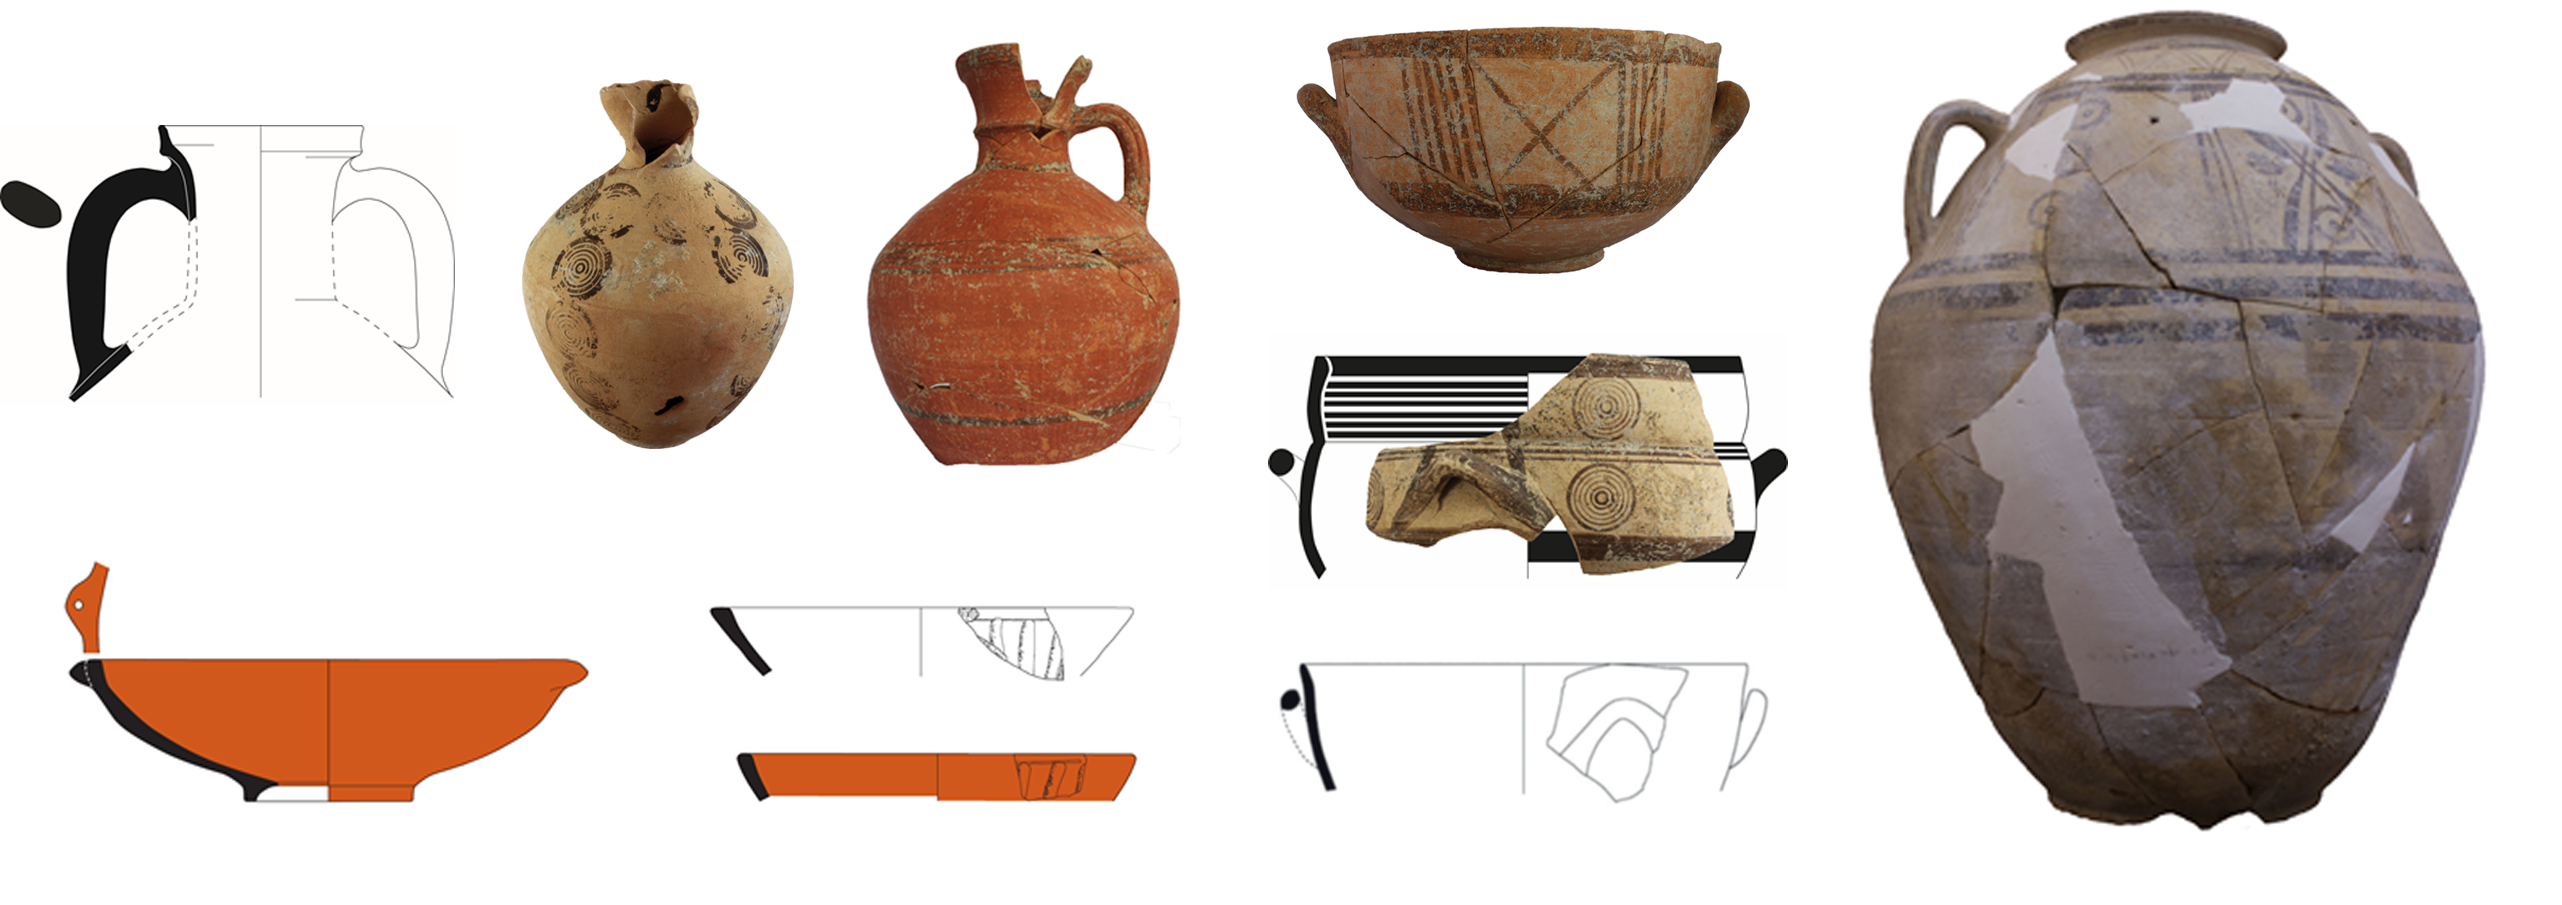 Keramik im zyprischen Stil aus Kontexten des 10. bis 8. Jh. vom Fundort Sirkeli Höyük